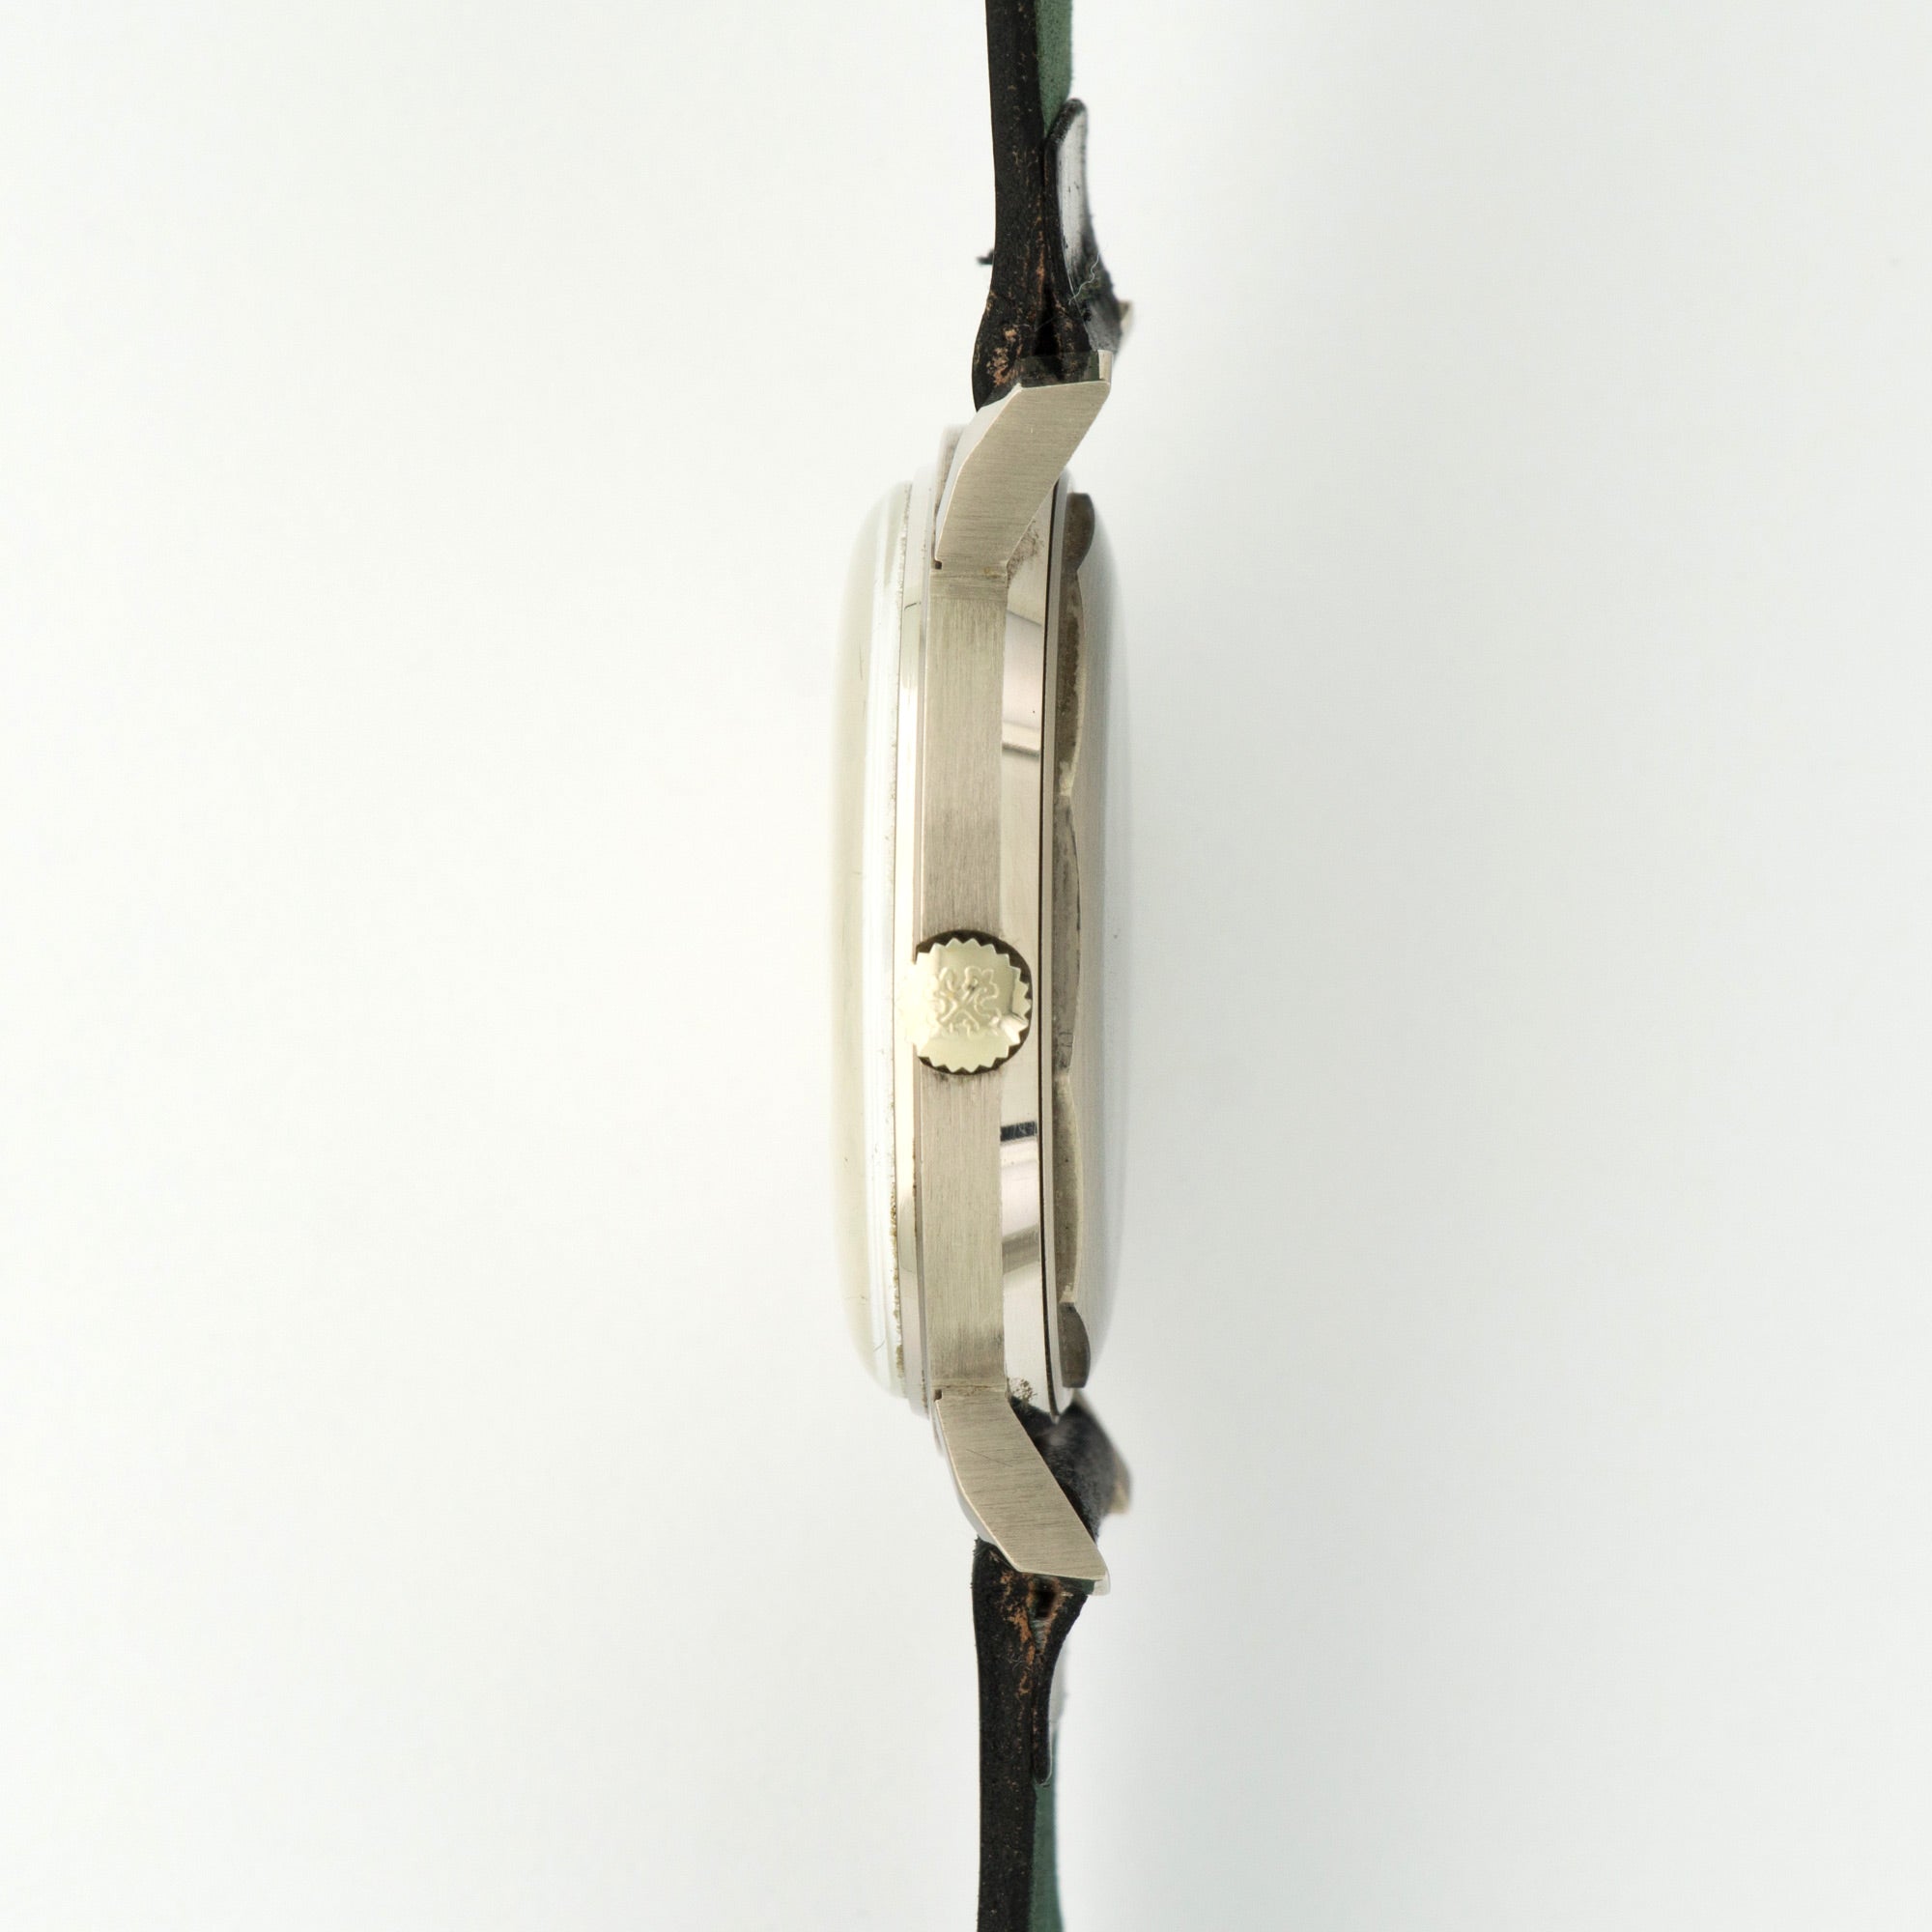 Patek Philippe - Patek Philippe White Gold Calatrava Watch Ref. 3445G - The Keystone Watches